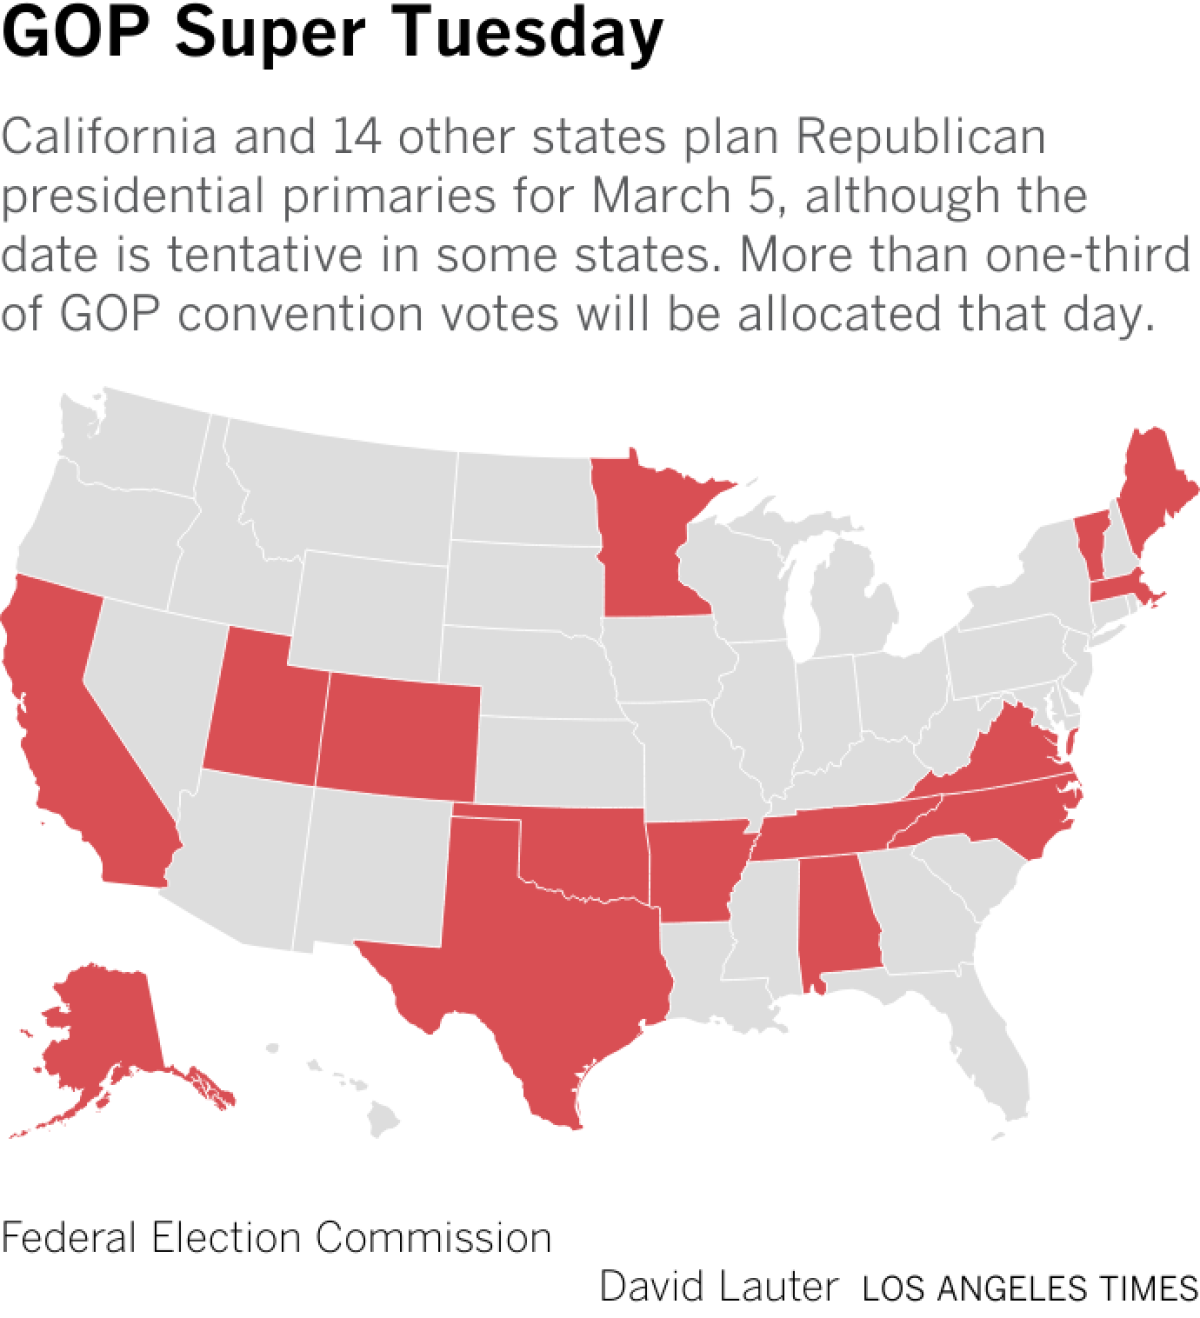 California ve diğer 14 eyaletin Cumhuriyetçilerin başkanlık ön seçimlerini 5 Mart'ta yapmayı planladığını gösteren harita, ancak bazı eyaletlerde tarih belirsiz.  GOP konvansiyonu oylarının üçte birinden fazlası o gün tahsis edilecek.